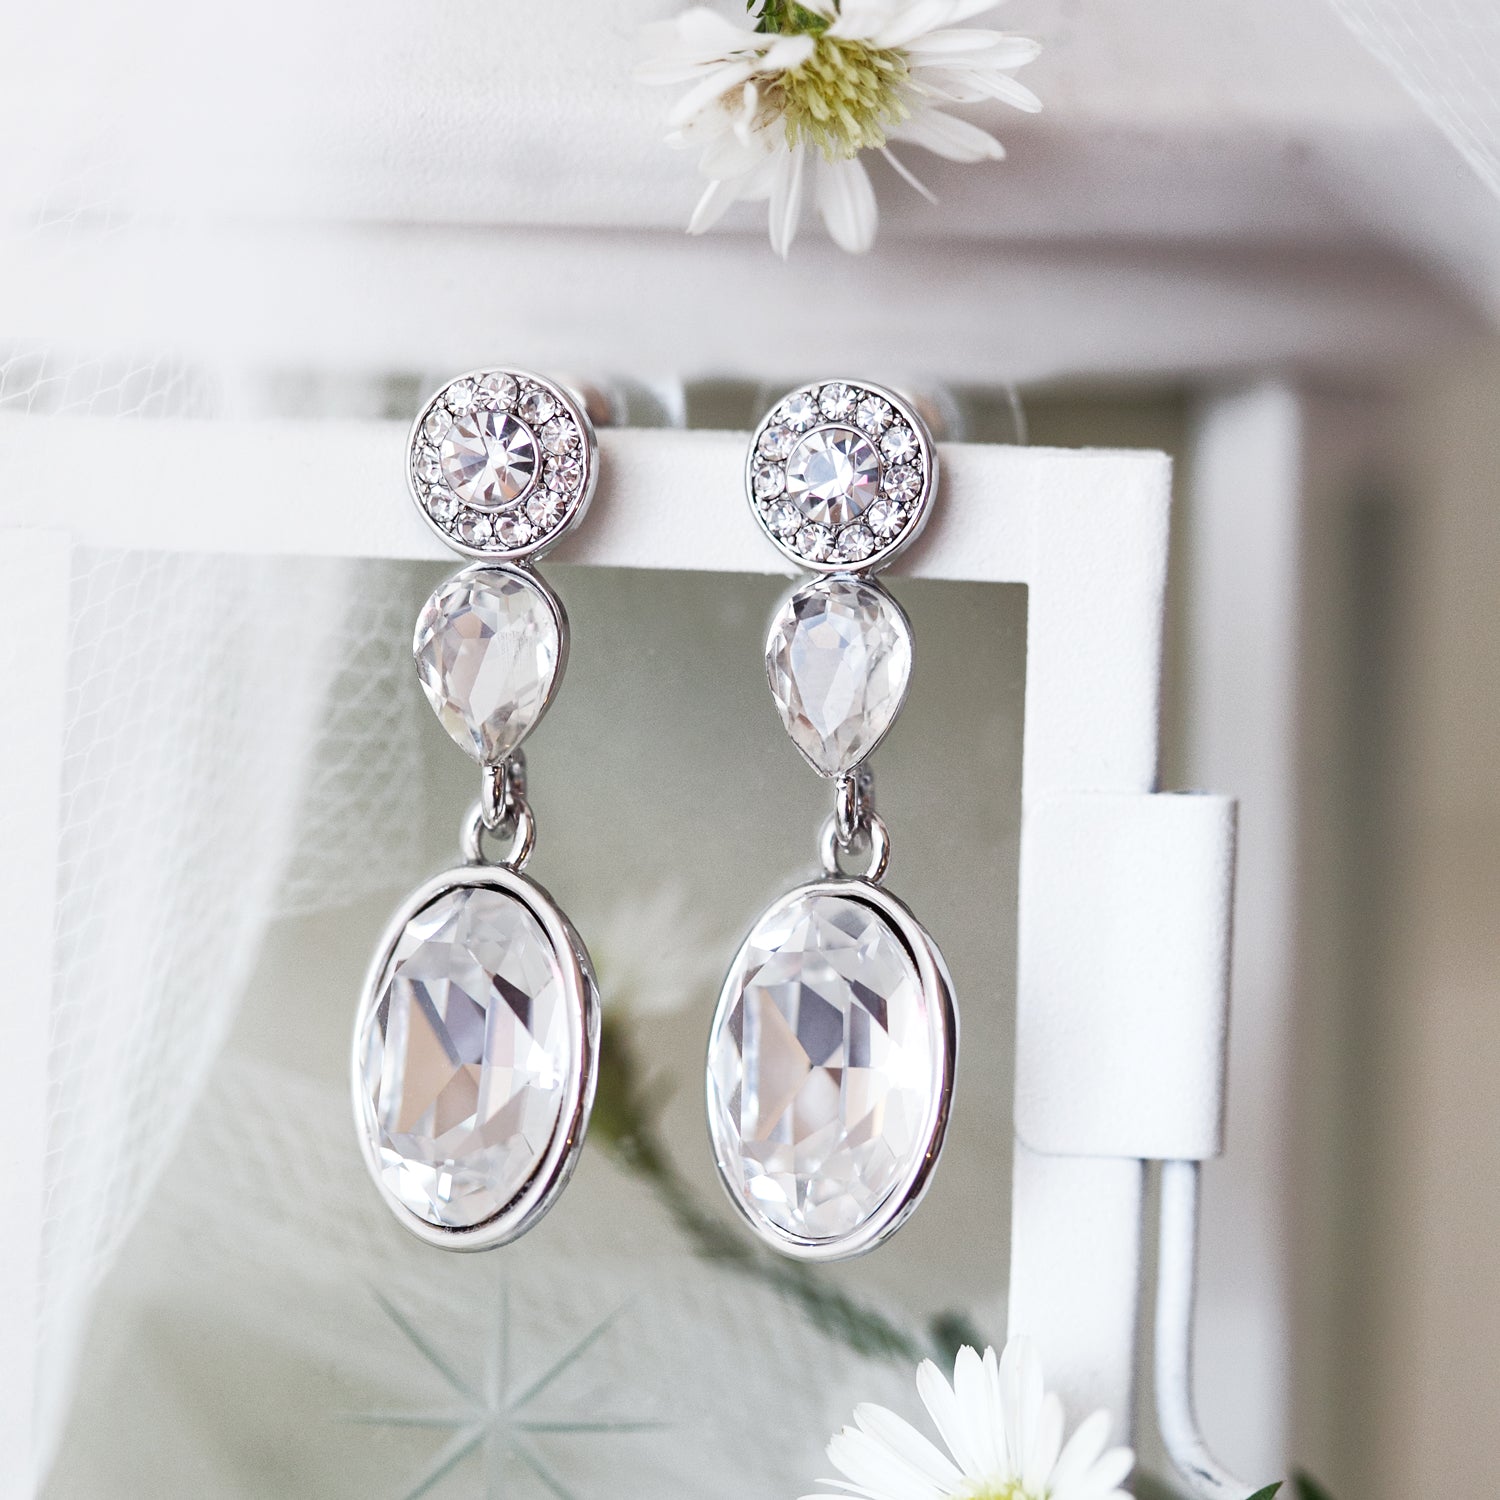 Swarovski Silver Drop Earrings | Bridal Earrings, Wedding Jewelry ...